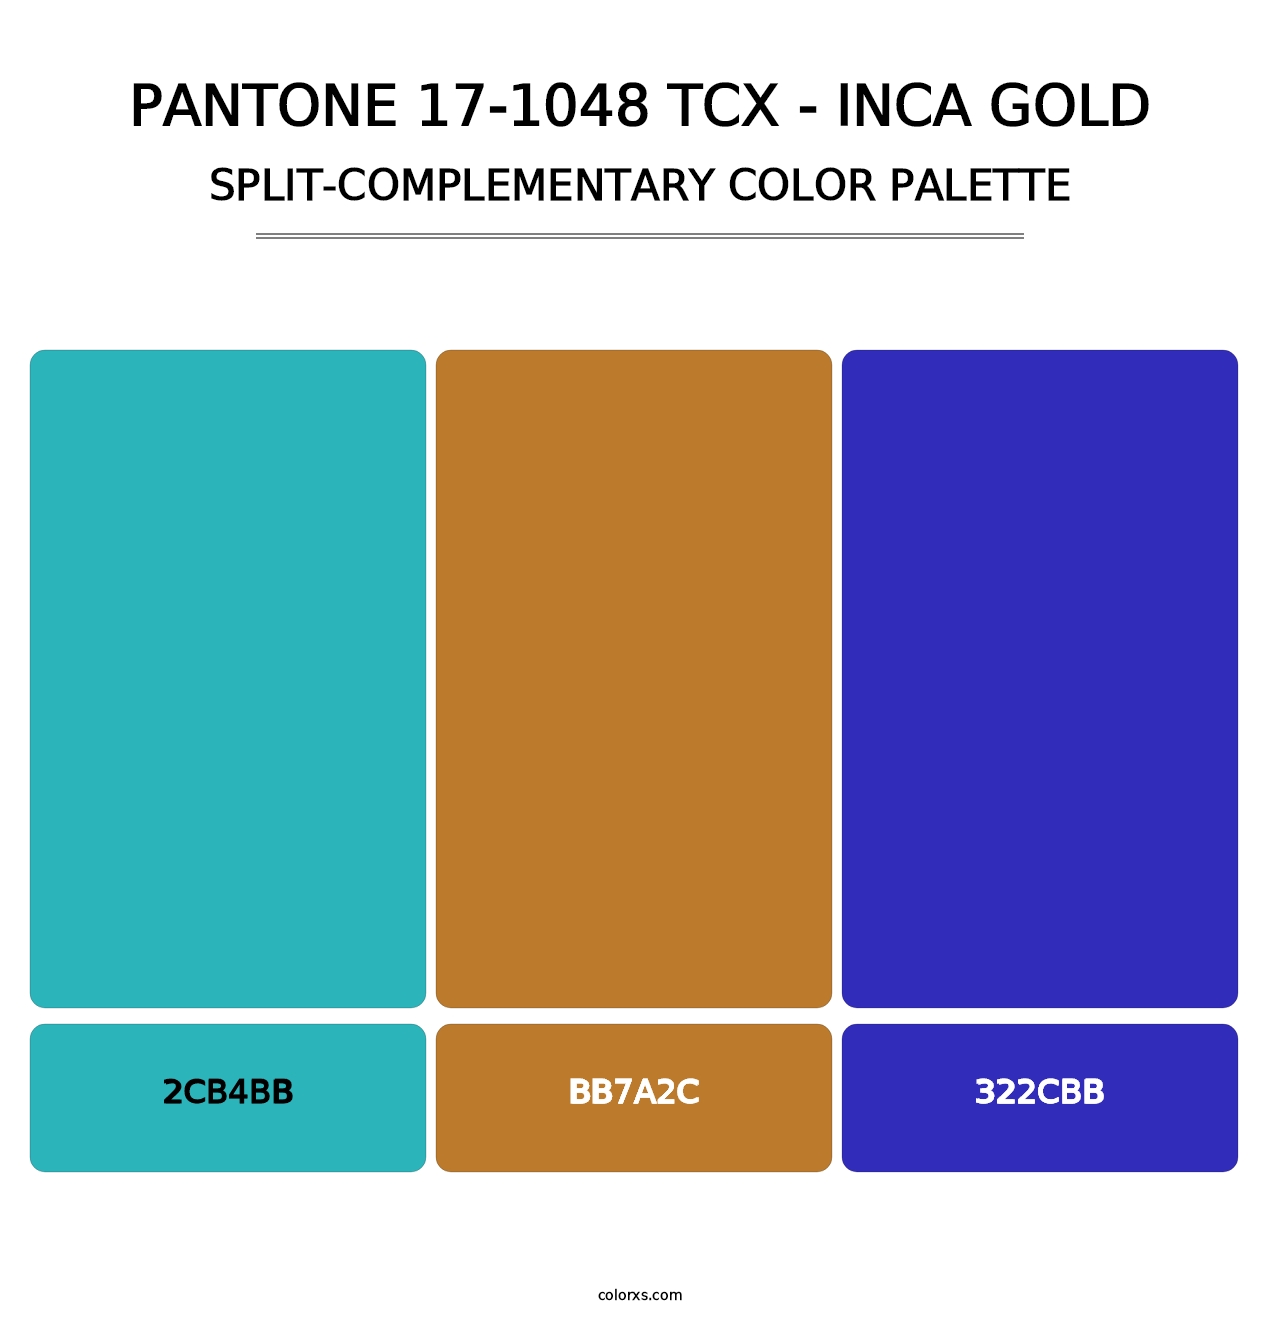 PANTONE 17-1048 TCX - Inca Gold - Split-Complementary Color Palette